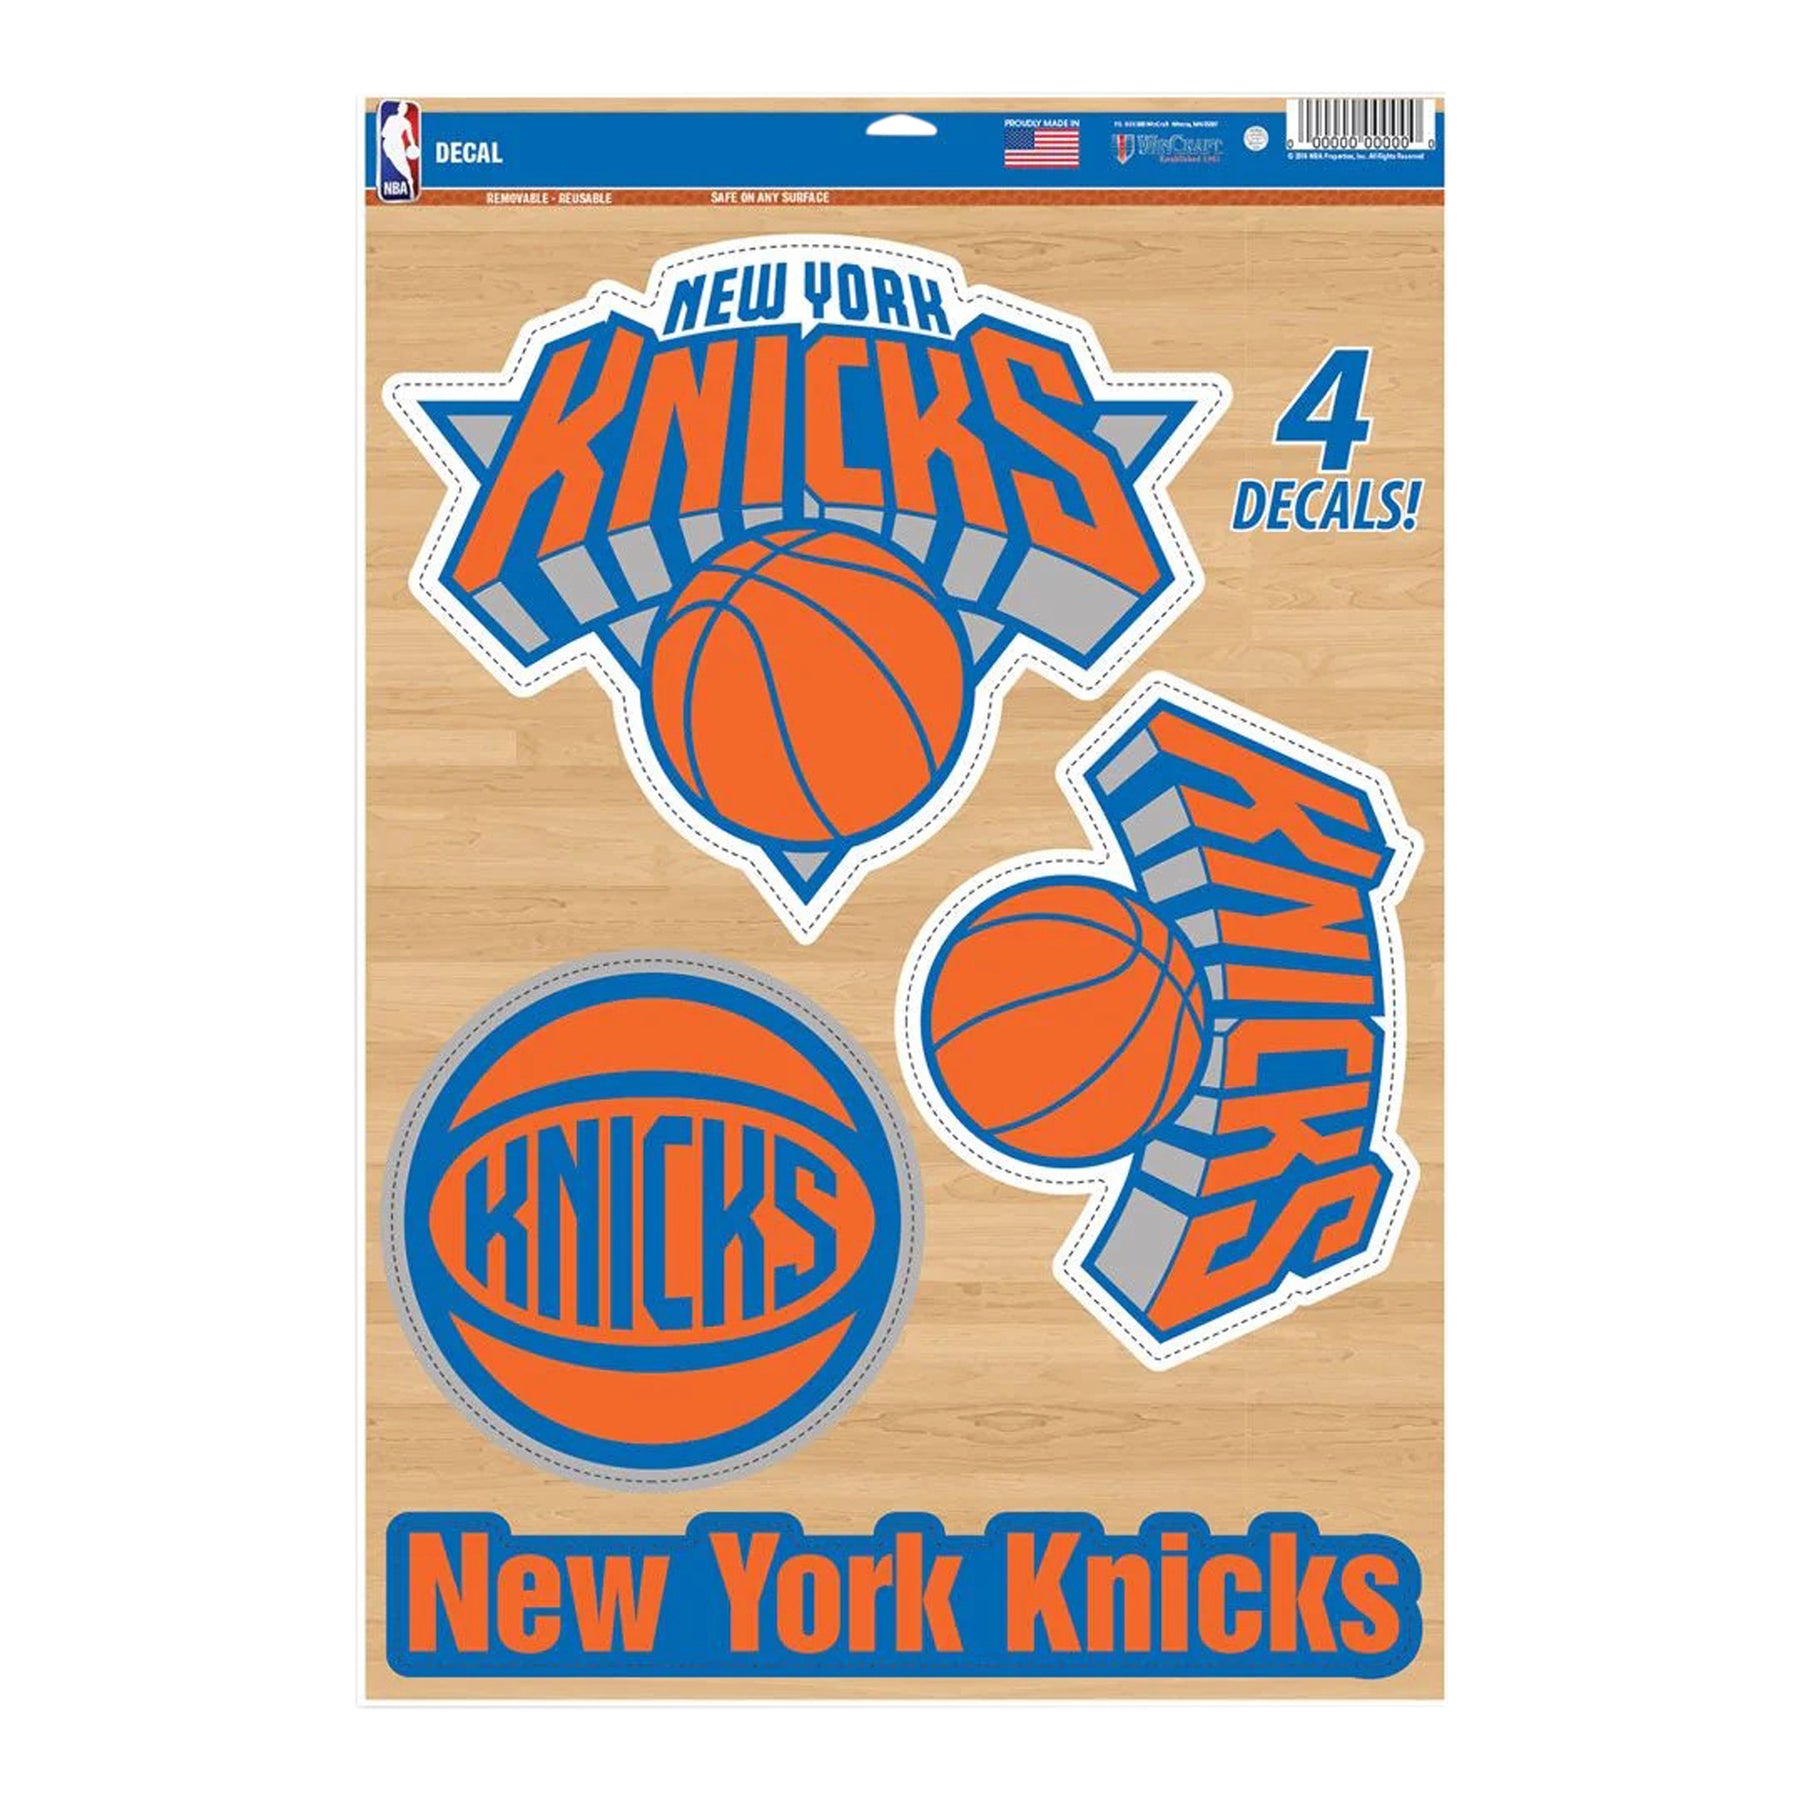 NY Knicks Decal 11x17